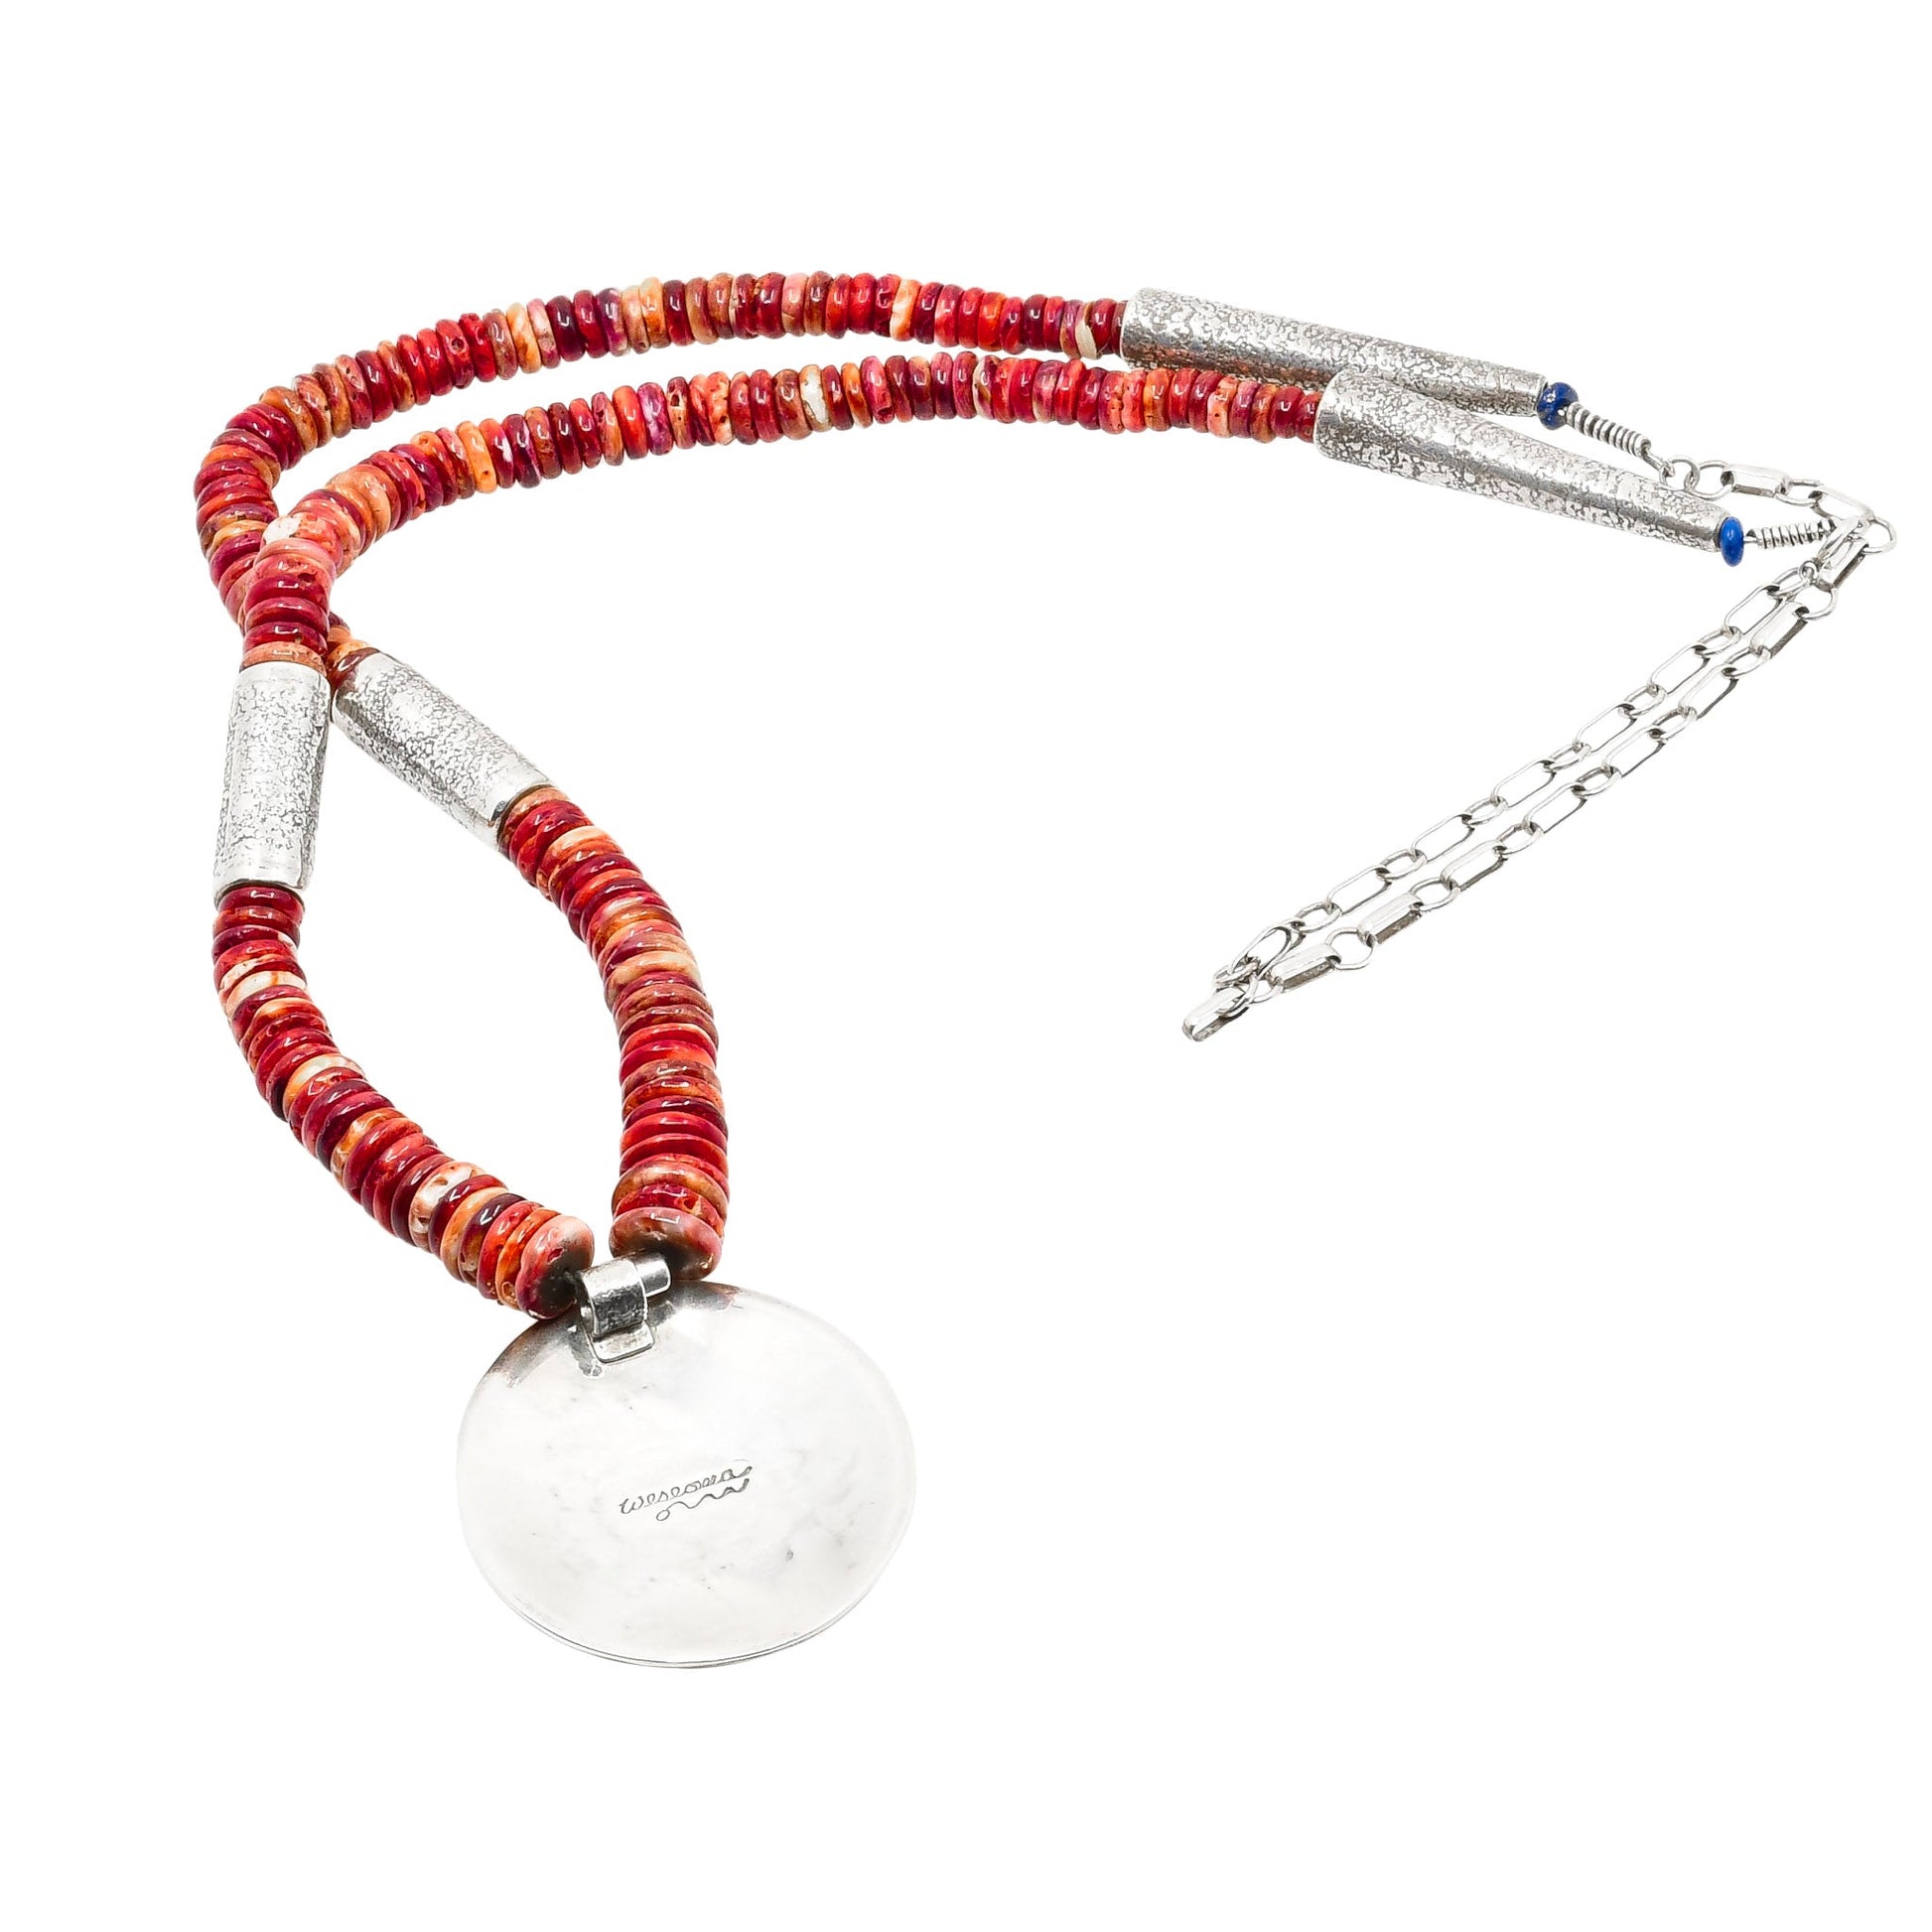 Vintage Hopi Necklace by Phillip Sekaquaptewa or Weseoma - Turquoise & Tufa